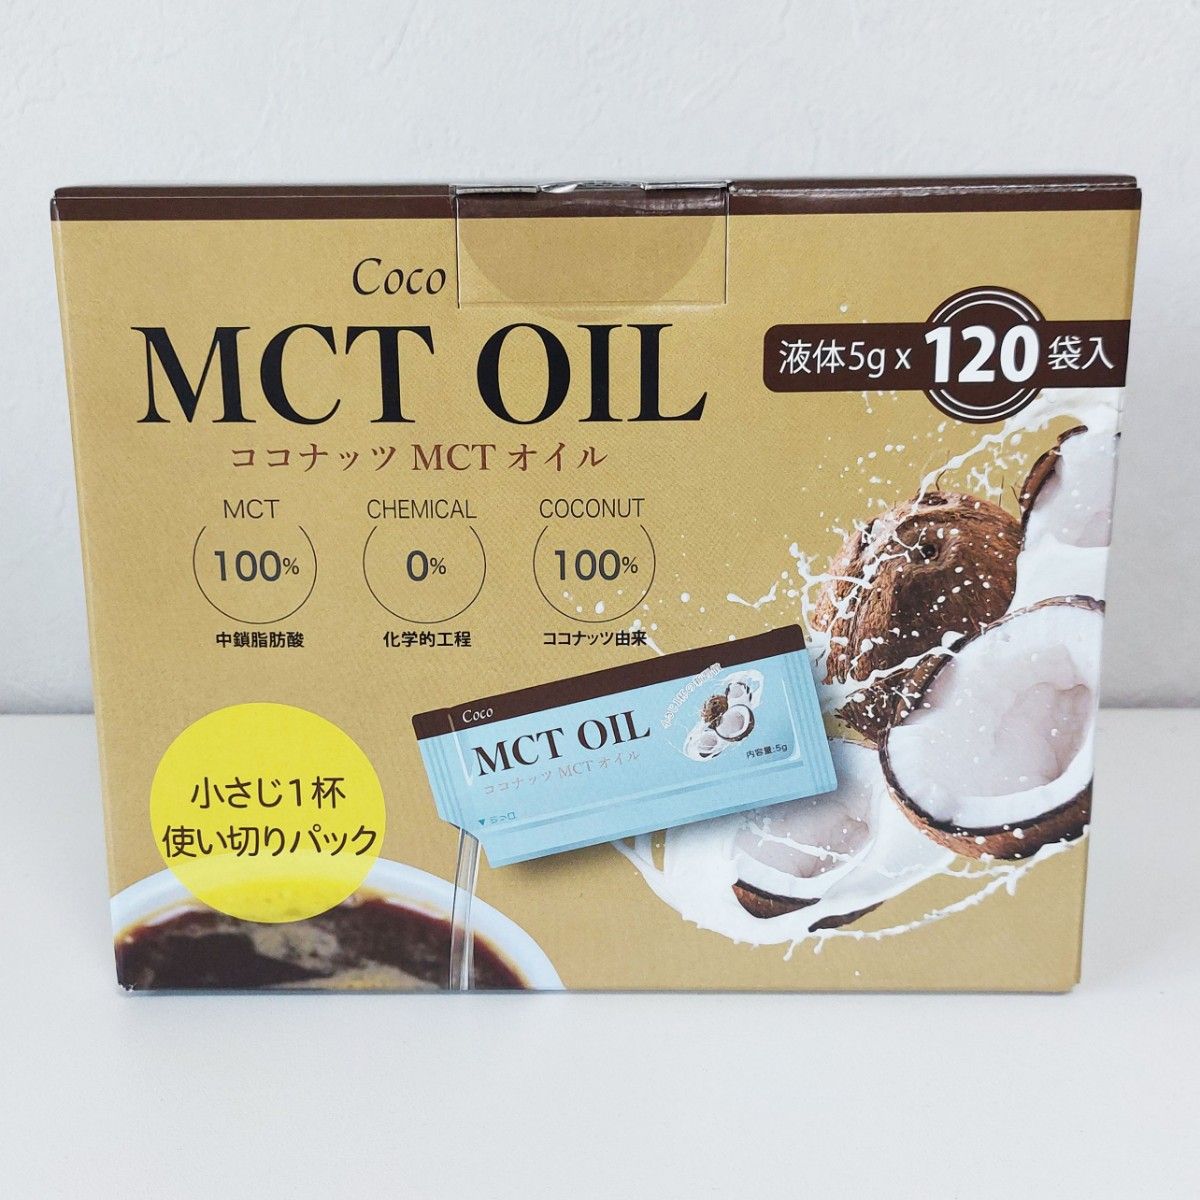 Coco MCT OIL ココナッツ MCTオイル 60袋個包装お試し コストコ